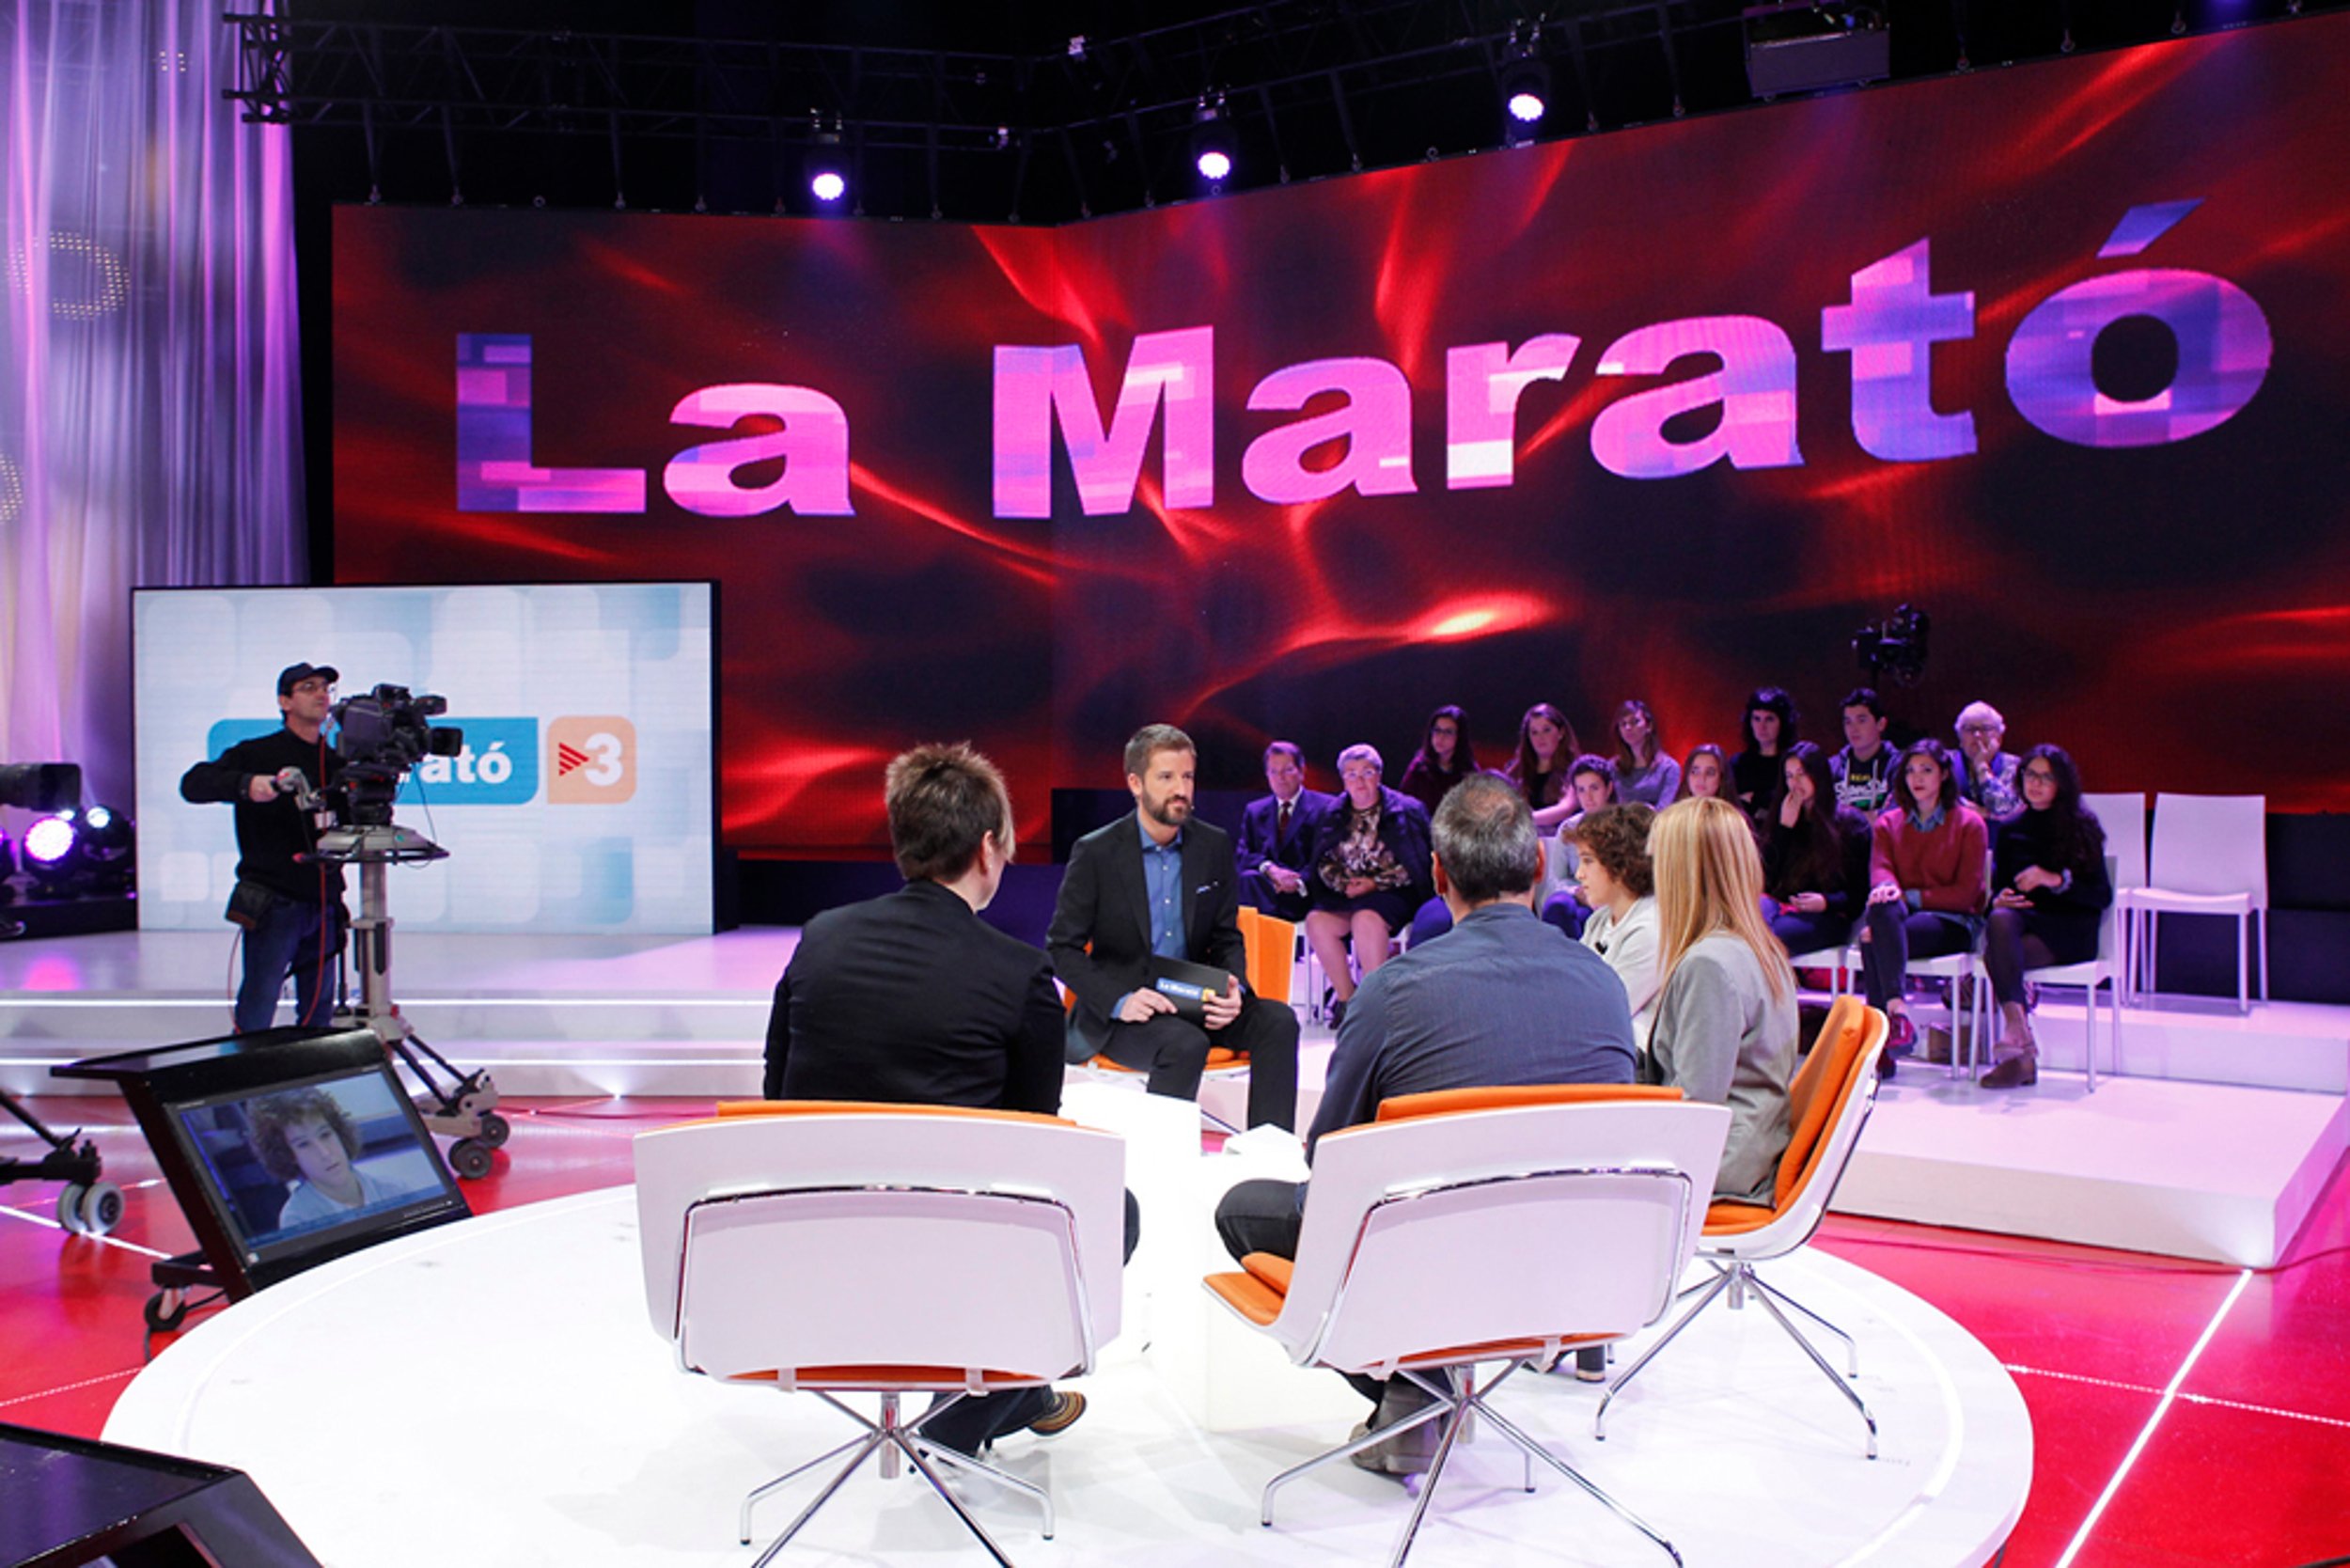 La Marató de TV3 sustituirá grandes sedes telefónicas por donativos telemáticos